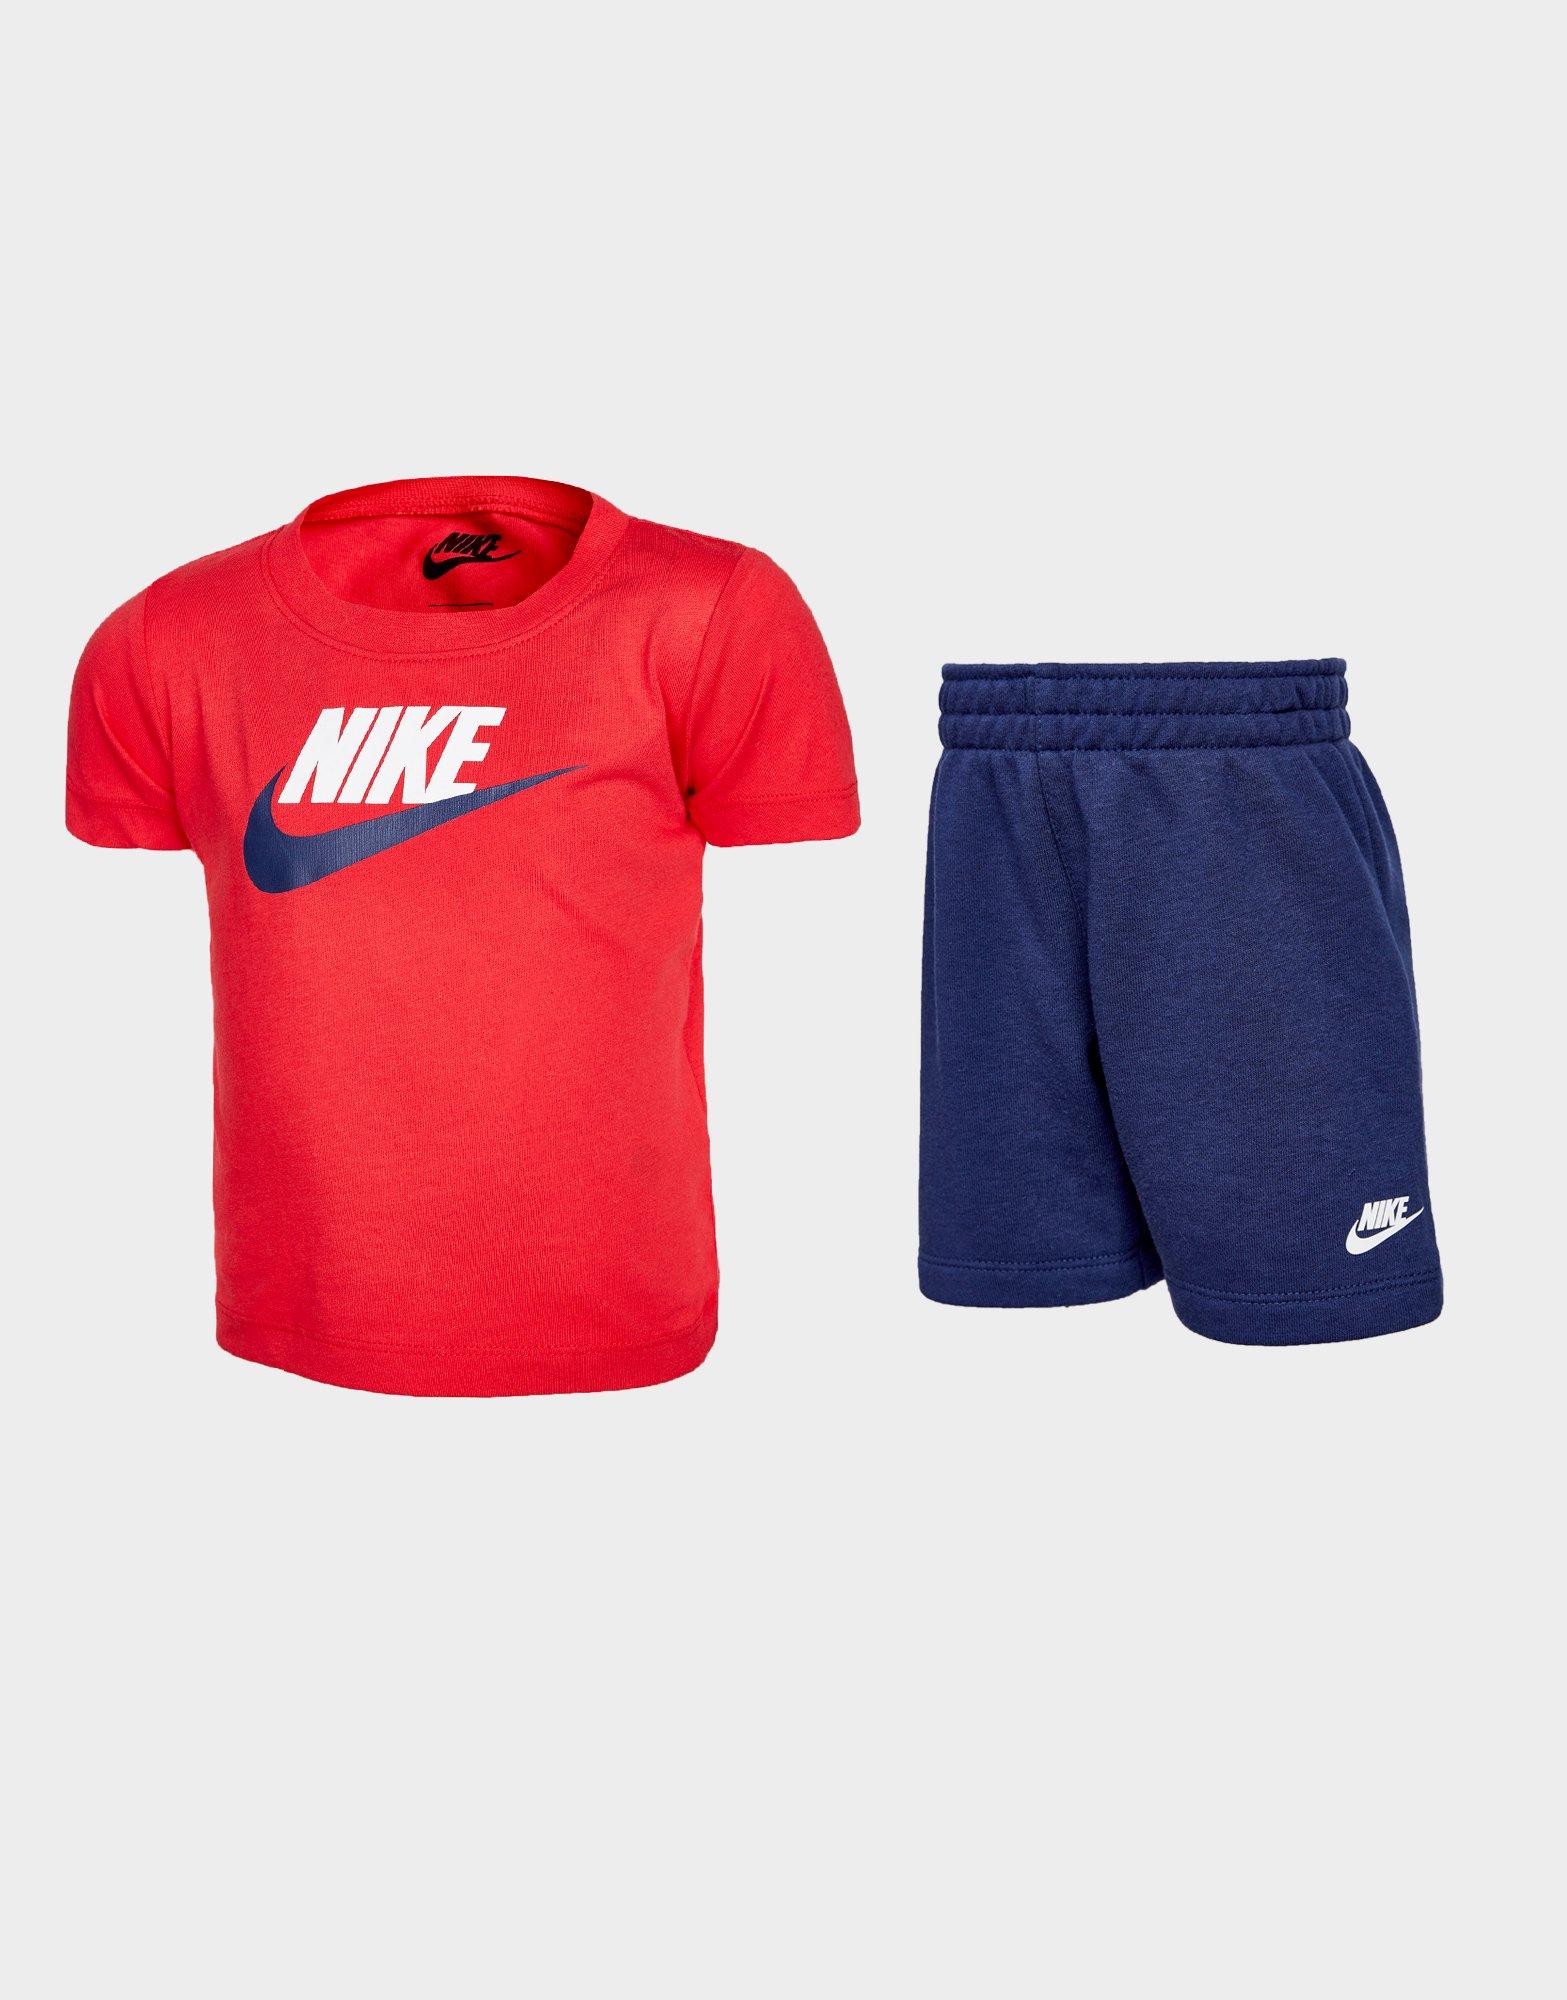 nike shorts & shirt set